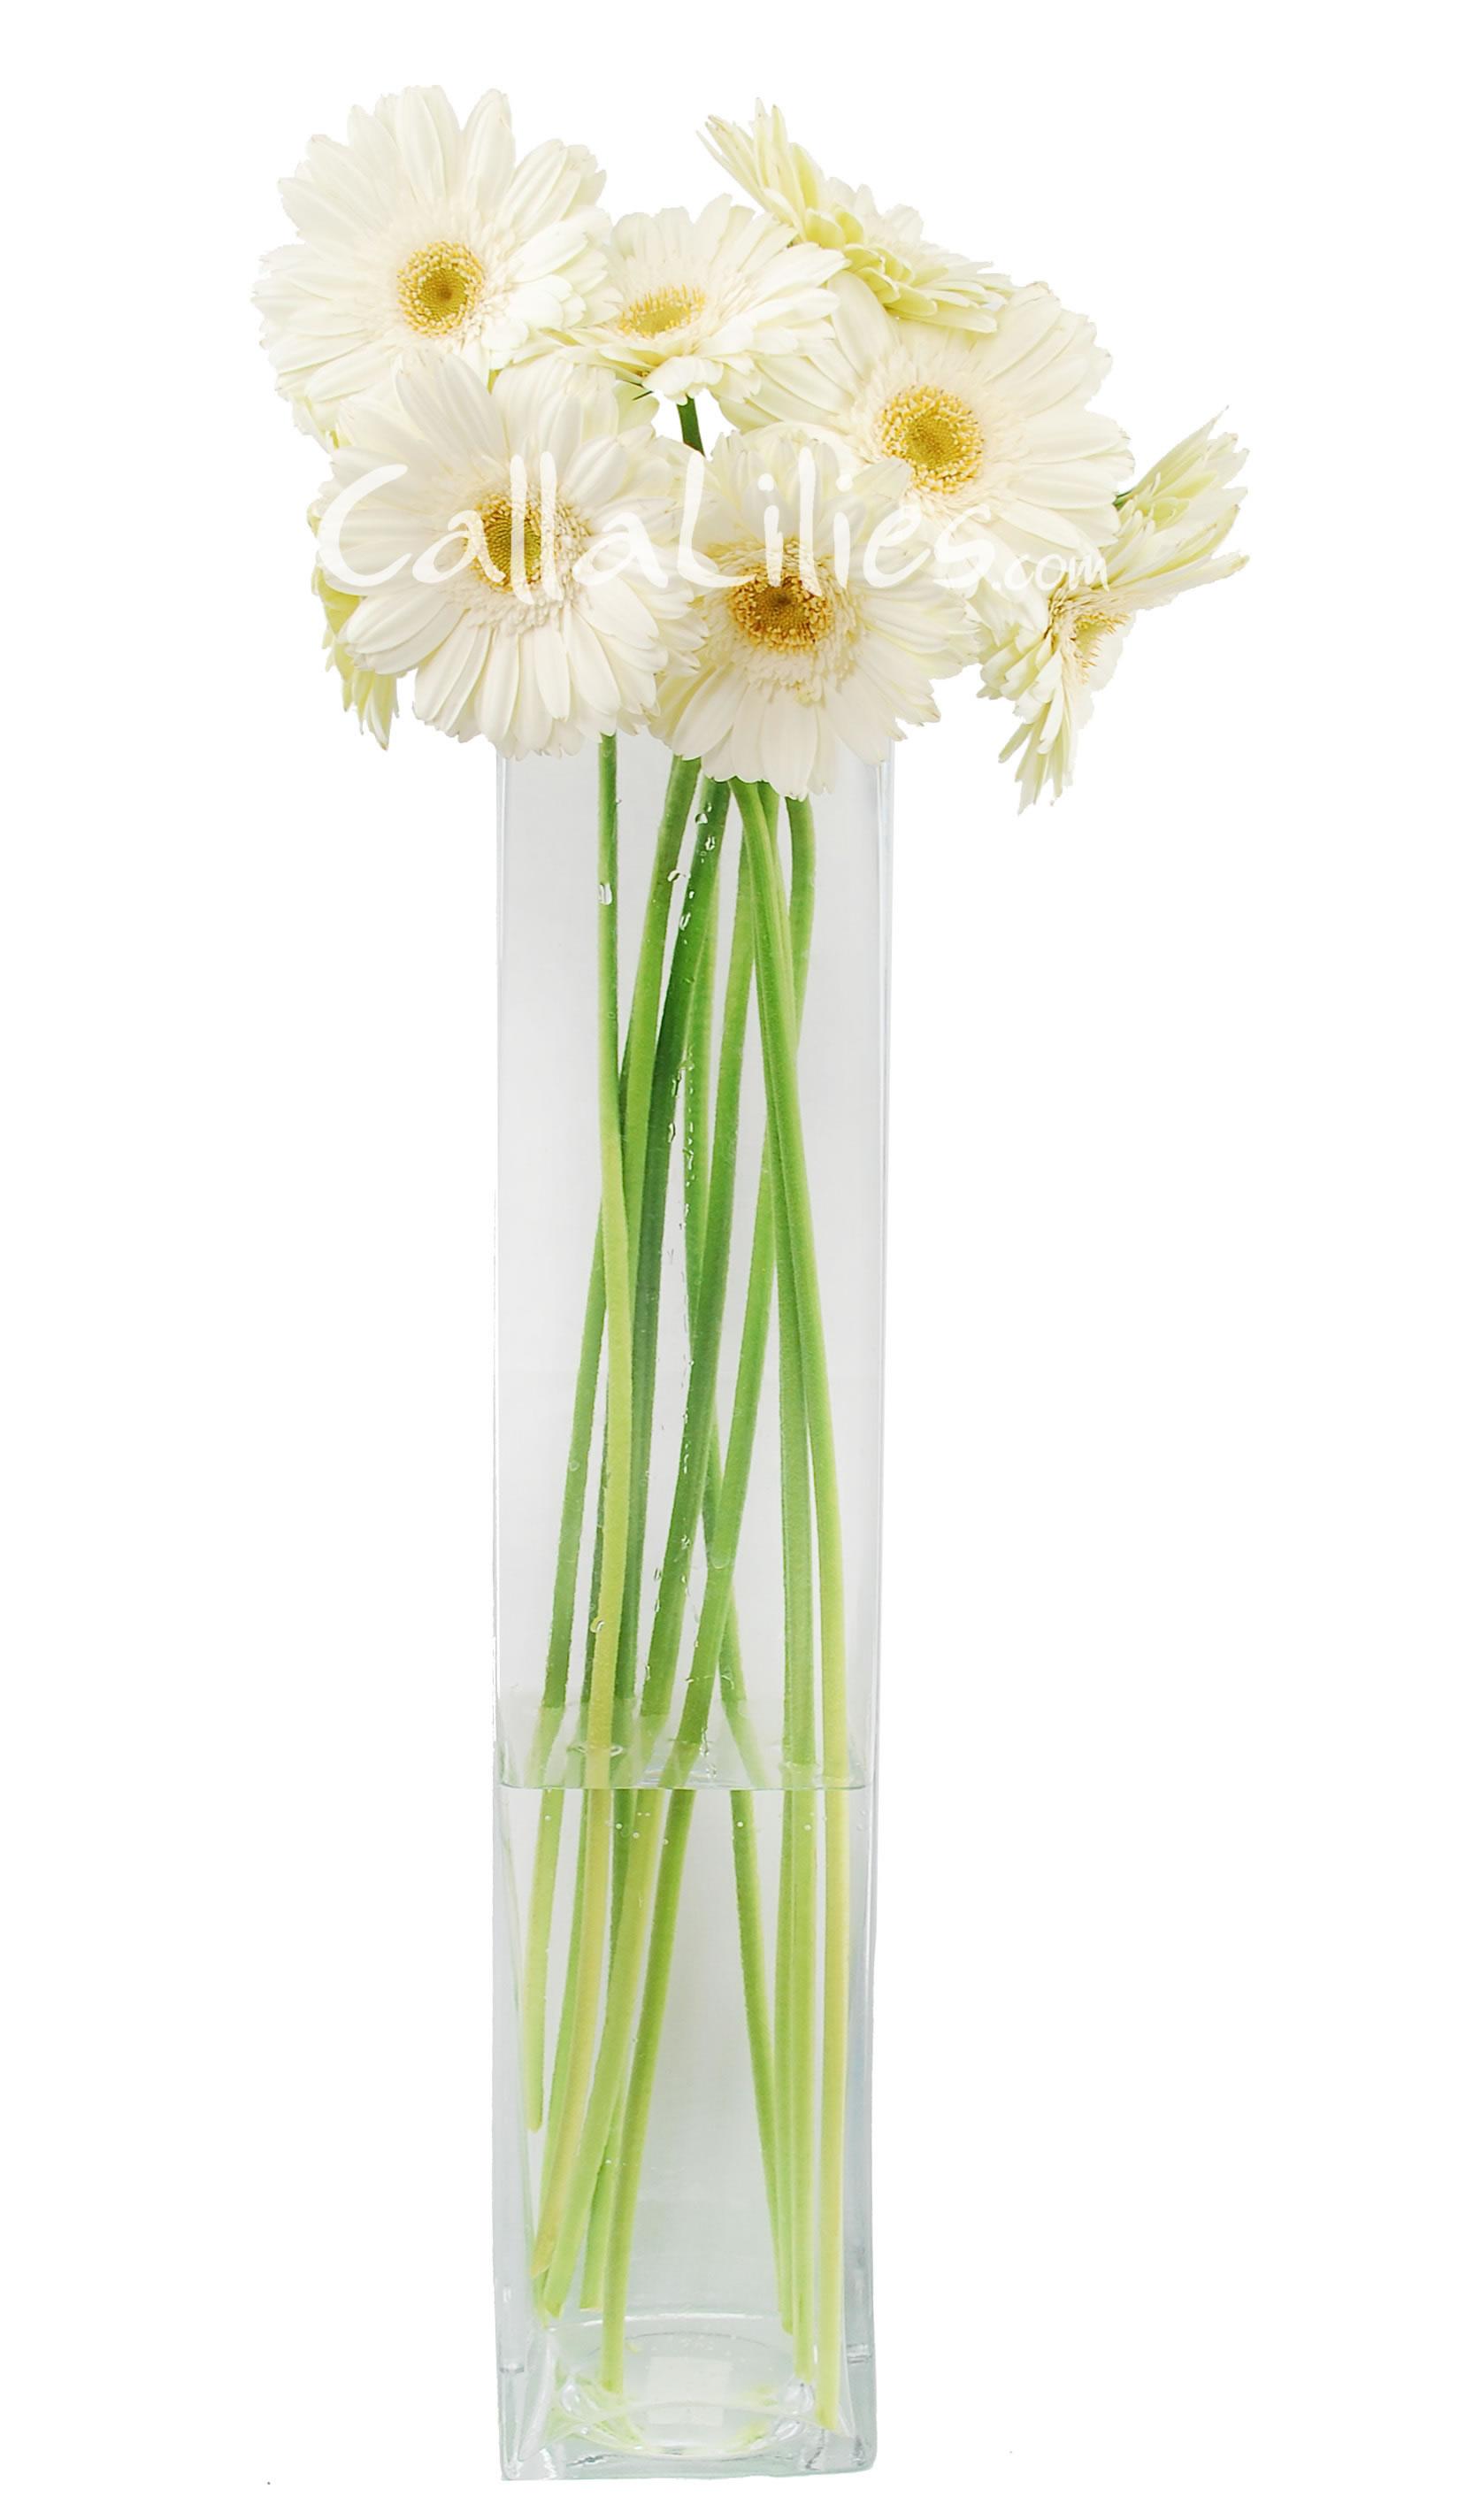 White Gerbera Daisies - Gerbera Daisies - Wedding Flowers